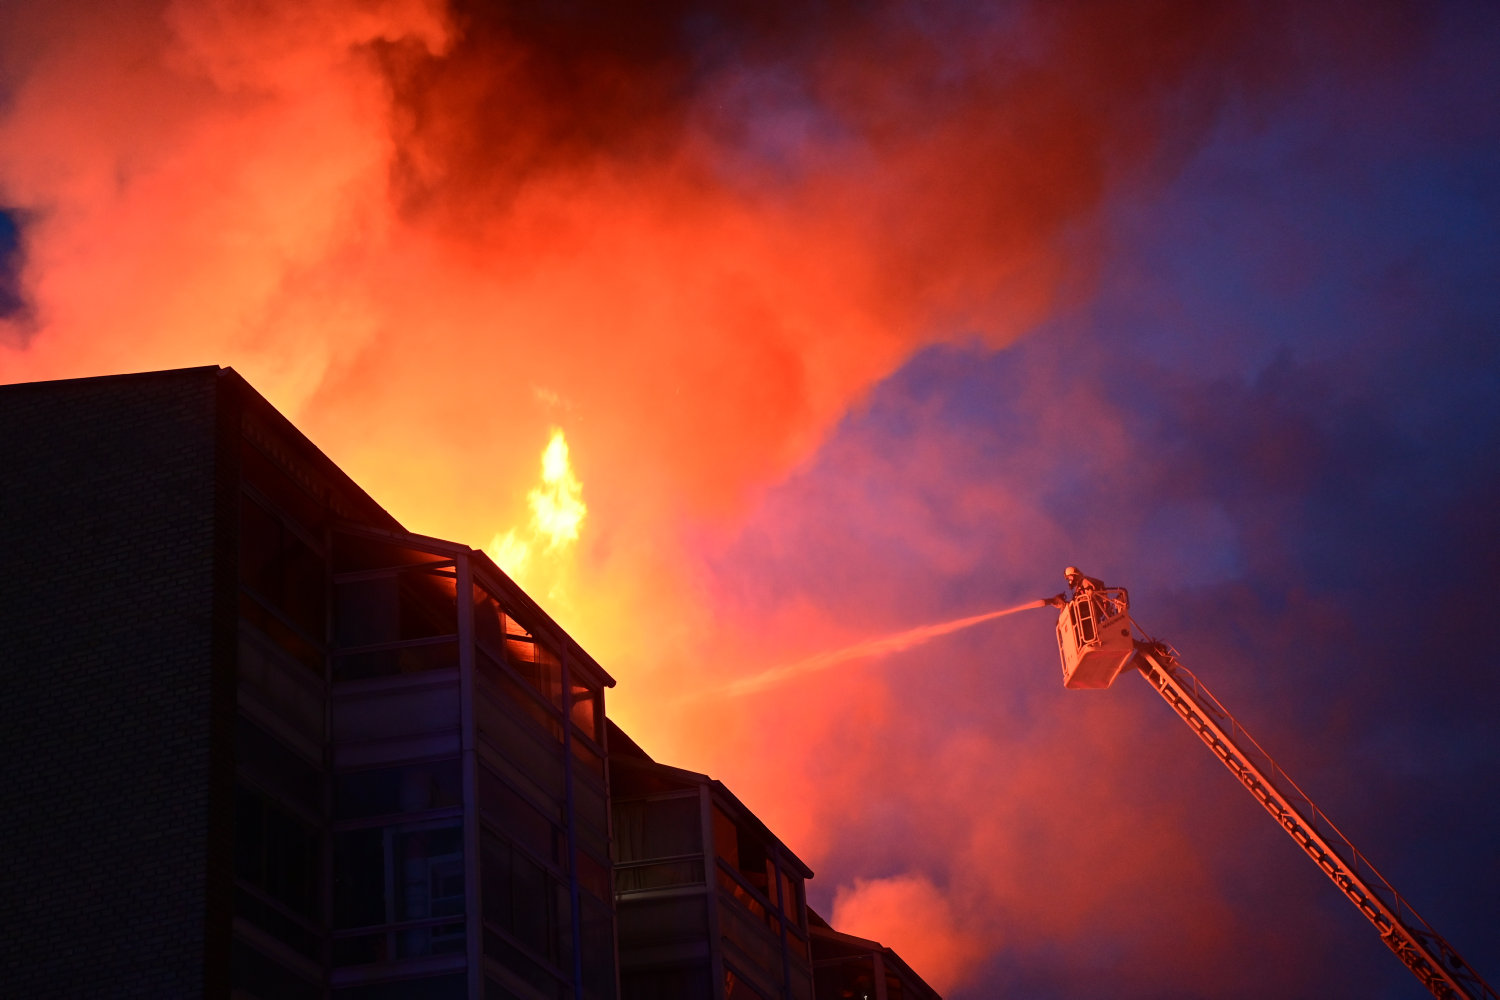 tre opgange evakueret i ildebrand i beboelsesejendom